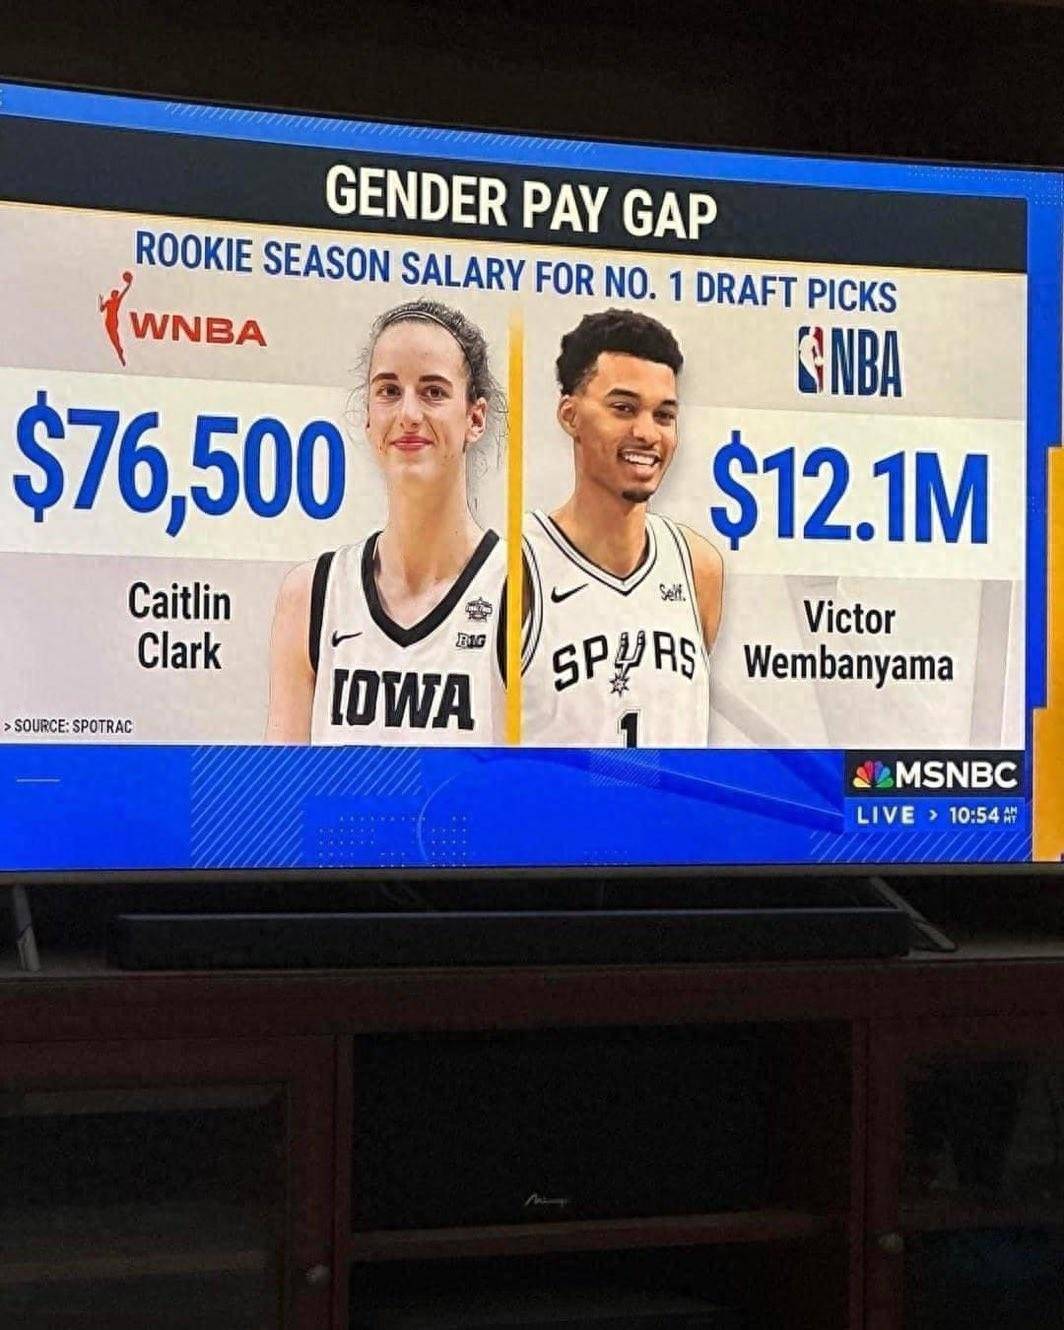 云泥之别WNBA状元新秀赛季年薪为7.65万 文班亚马1216万美元